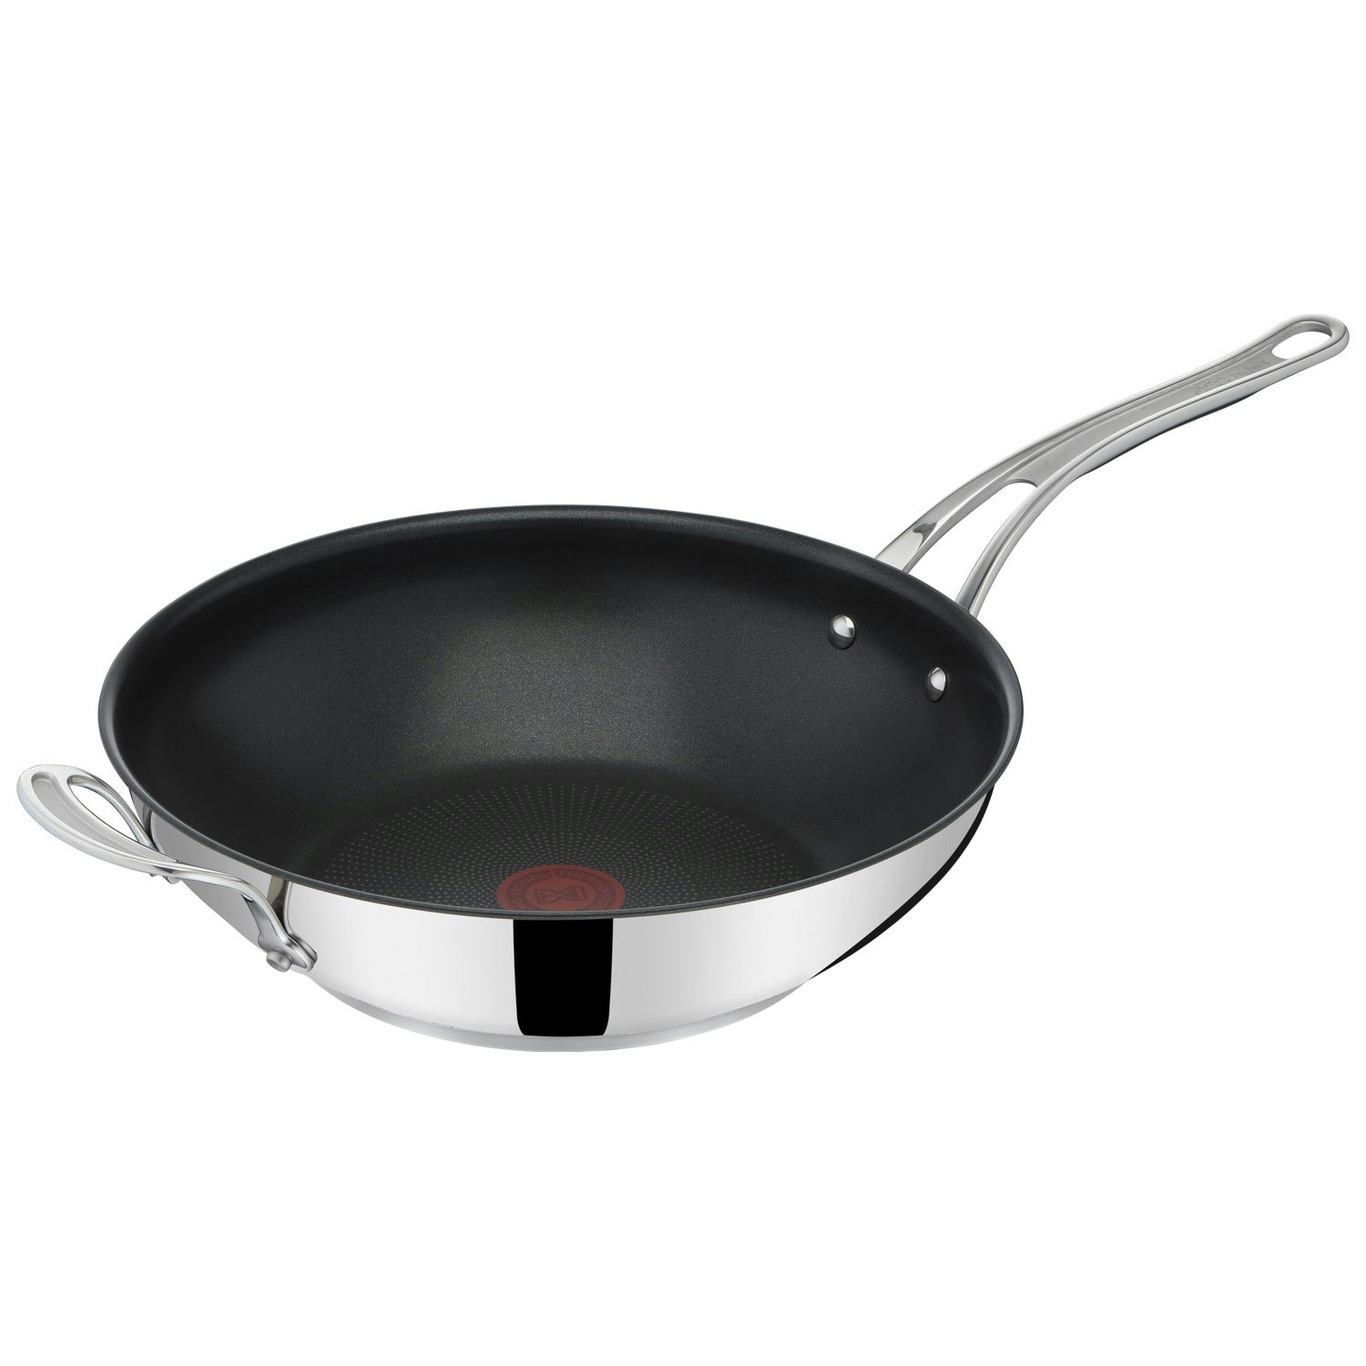 spleet ik ben trots verbinding verbroken Jamie Oliver Cook's Classic Wok Pan, 30 cm - Tefal @ RoyalDesign